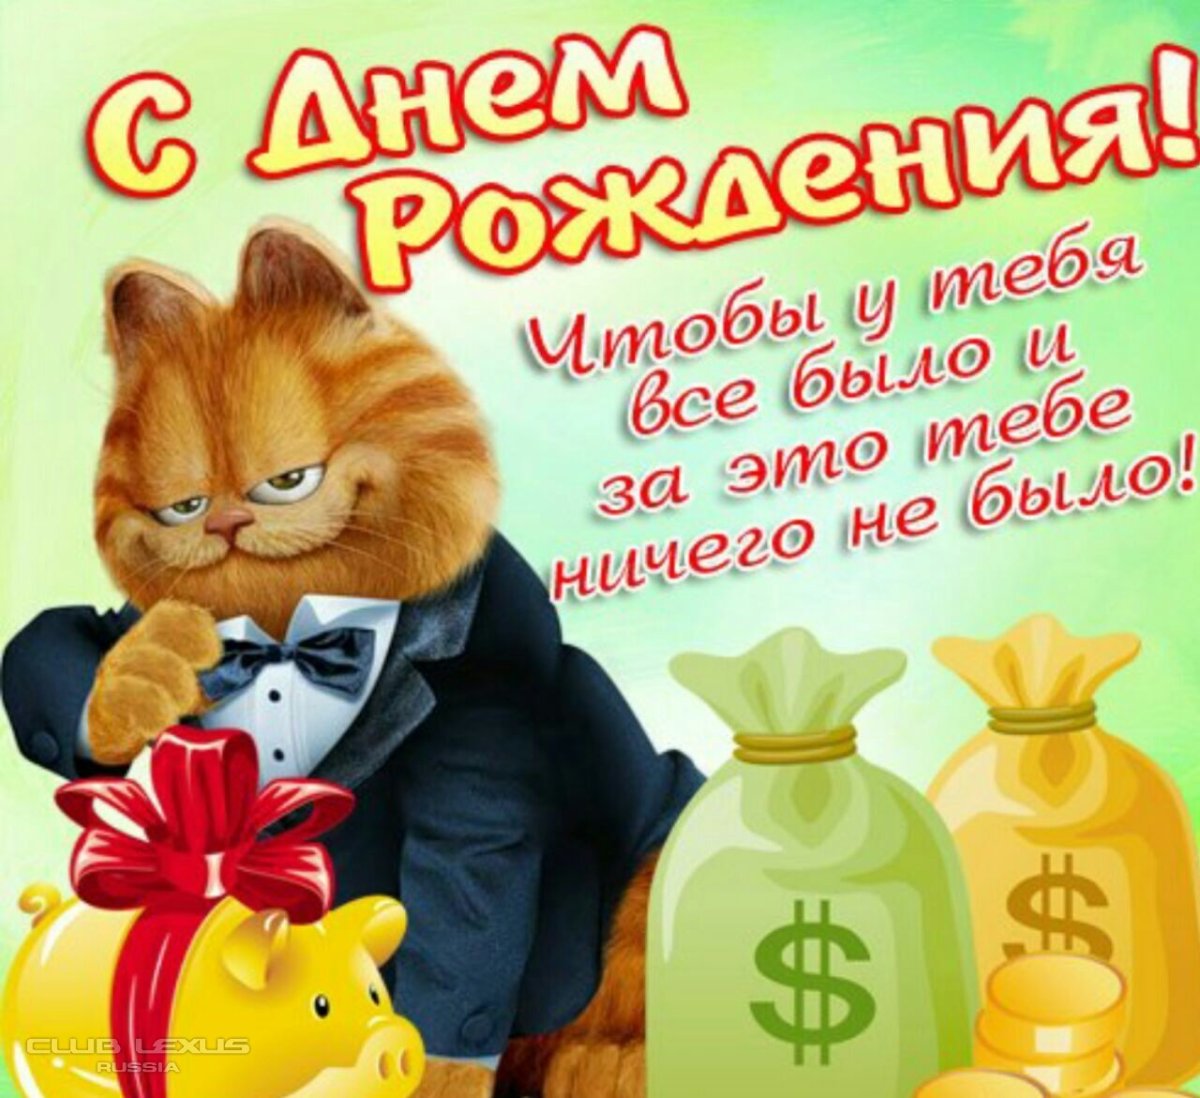 Поздравления с днем рождения однокласснице в прозе 💐 – бесплатные пожелания на Pozdravim